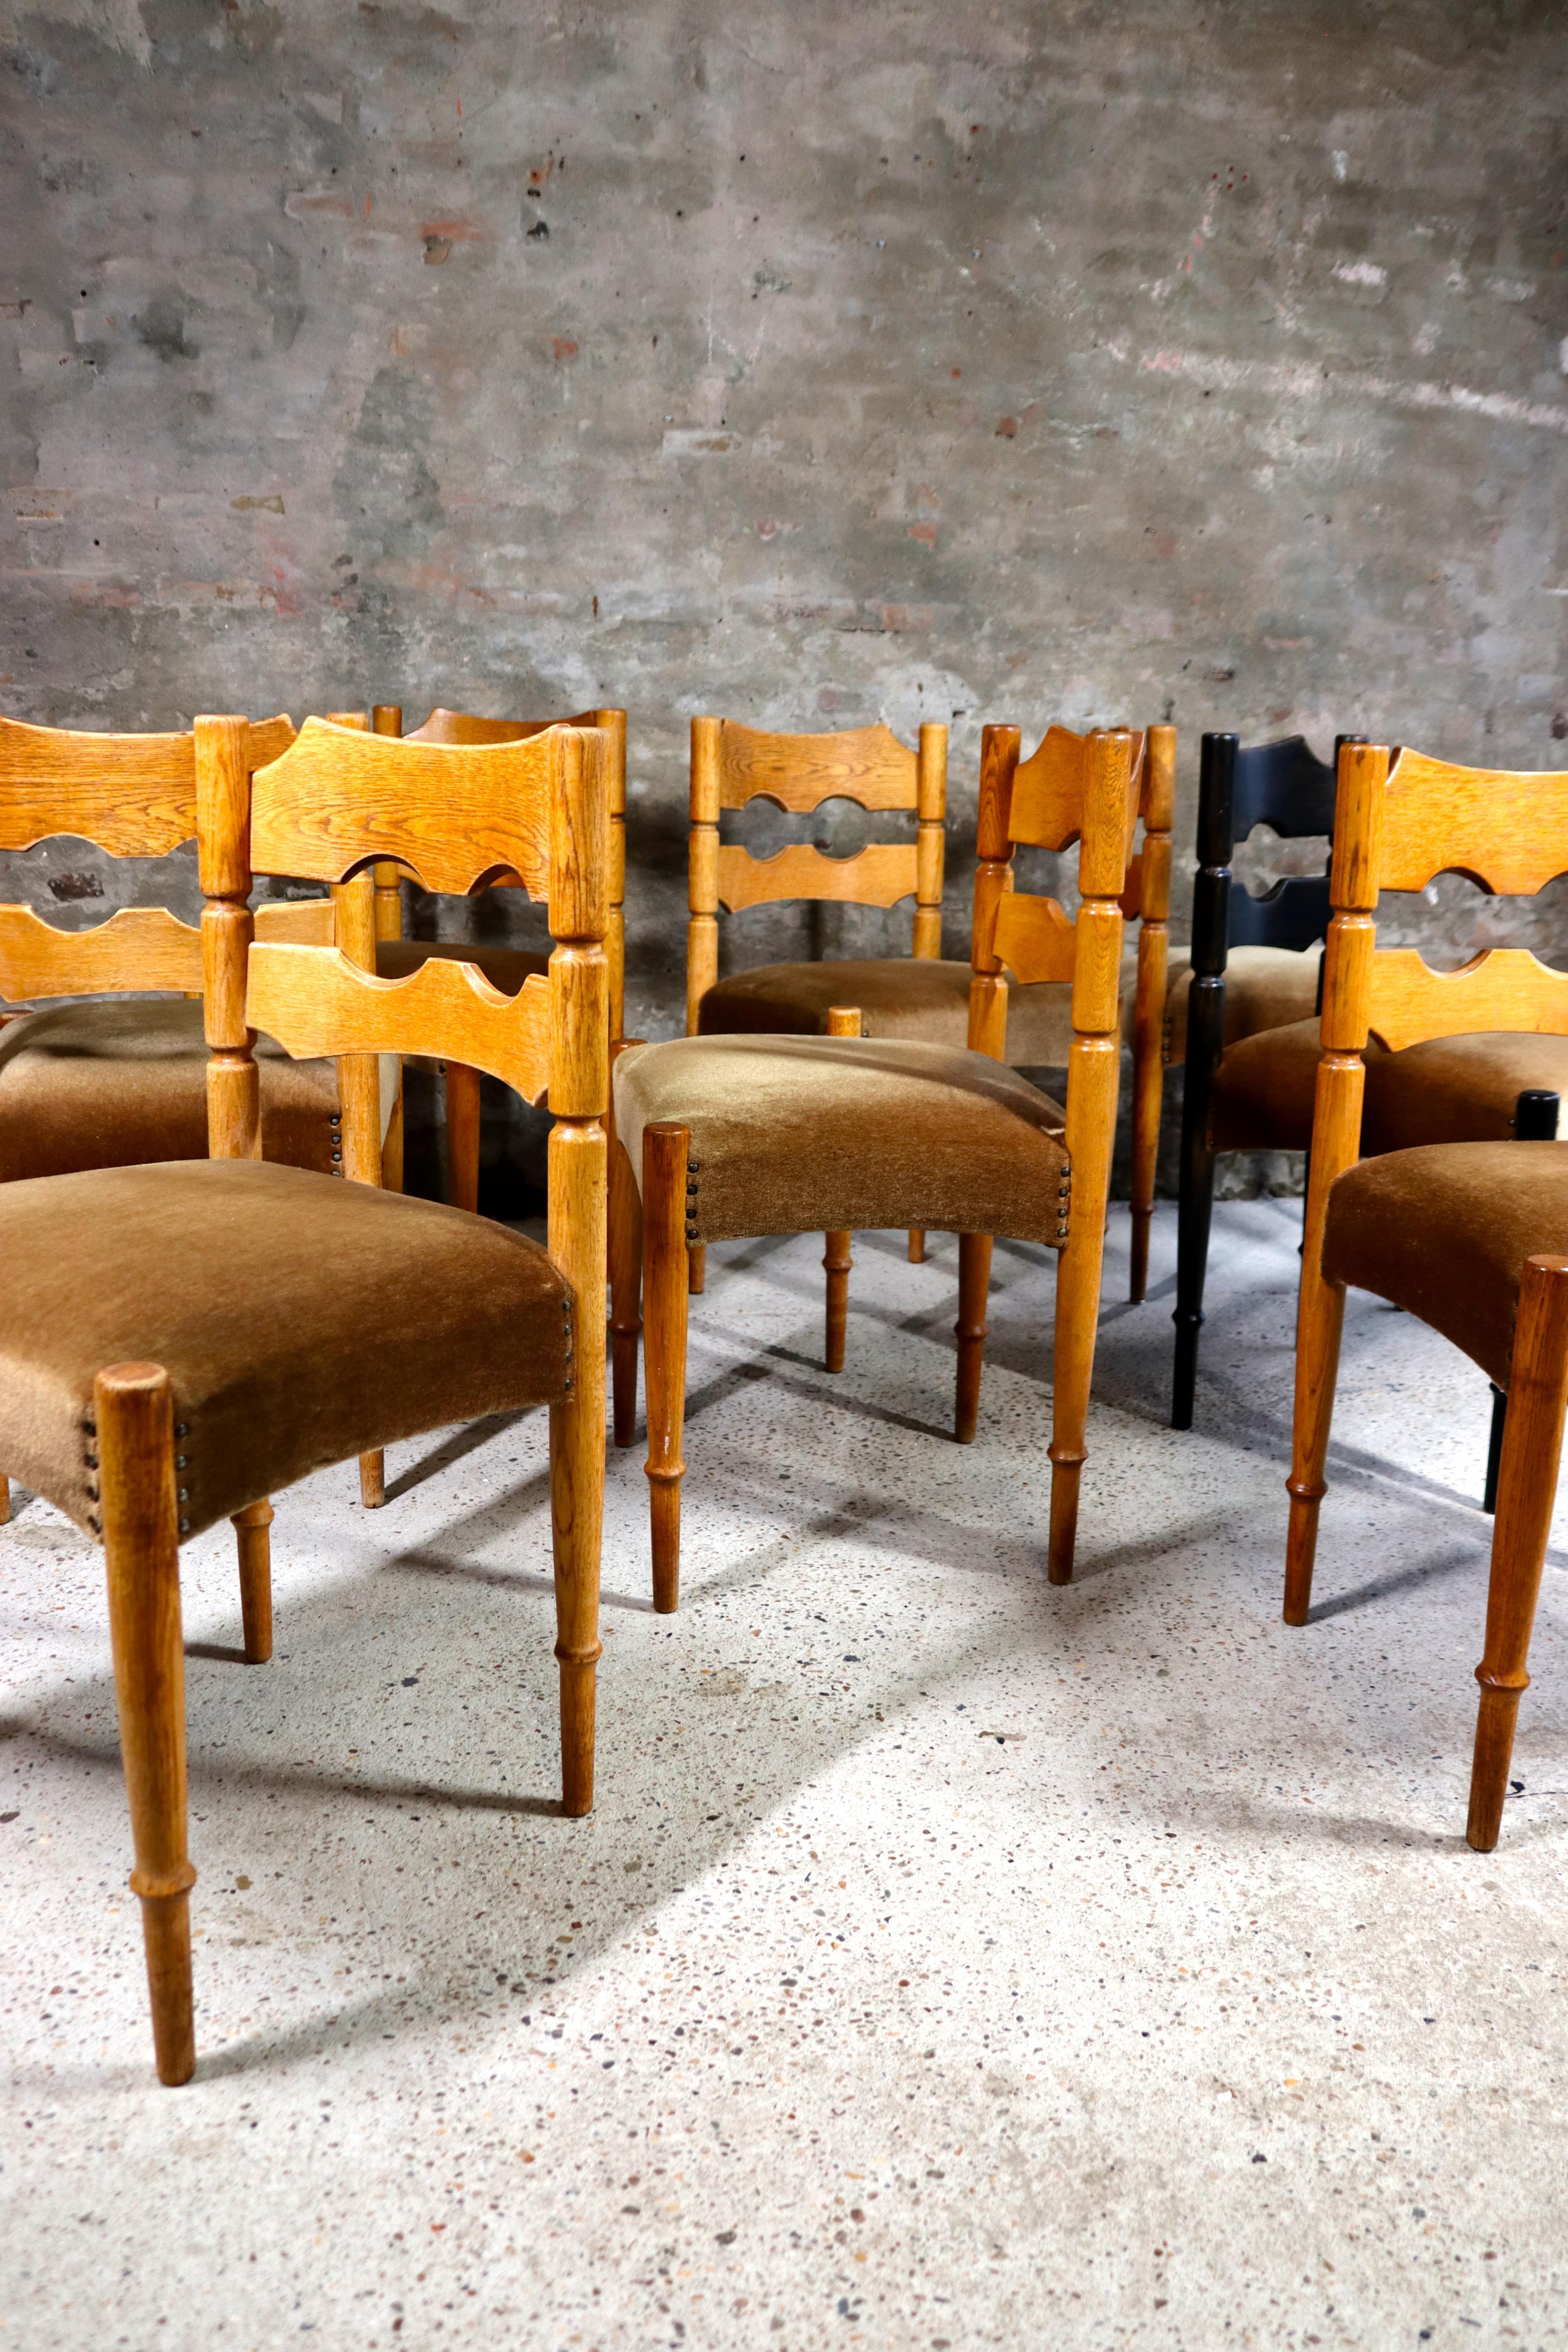 Diese Stühle wurden von Henning Kjaernulf in den 1960er Jahren entworfen. Die Stühle sind größtenteils unangetastet und noch völlig original. Es gibt 7 normale Stühle und 1 Stuhl wurde schwarz lackiert. Sie sind alle in allgemein gutem Zustand mit